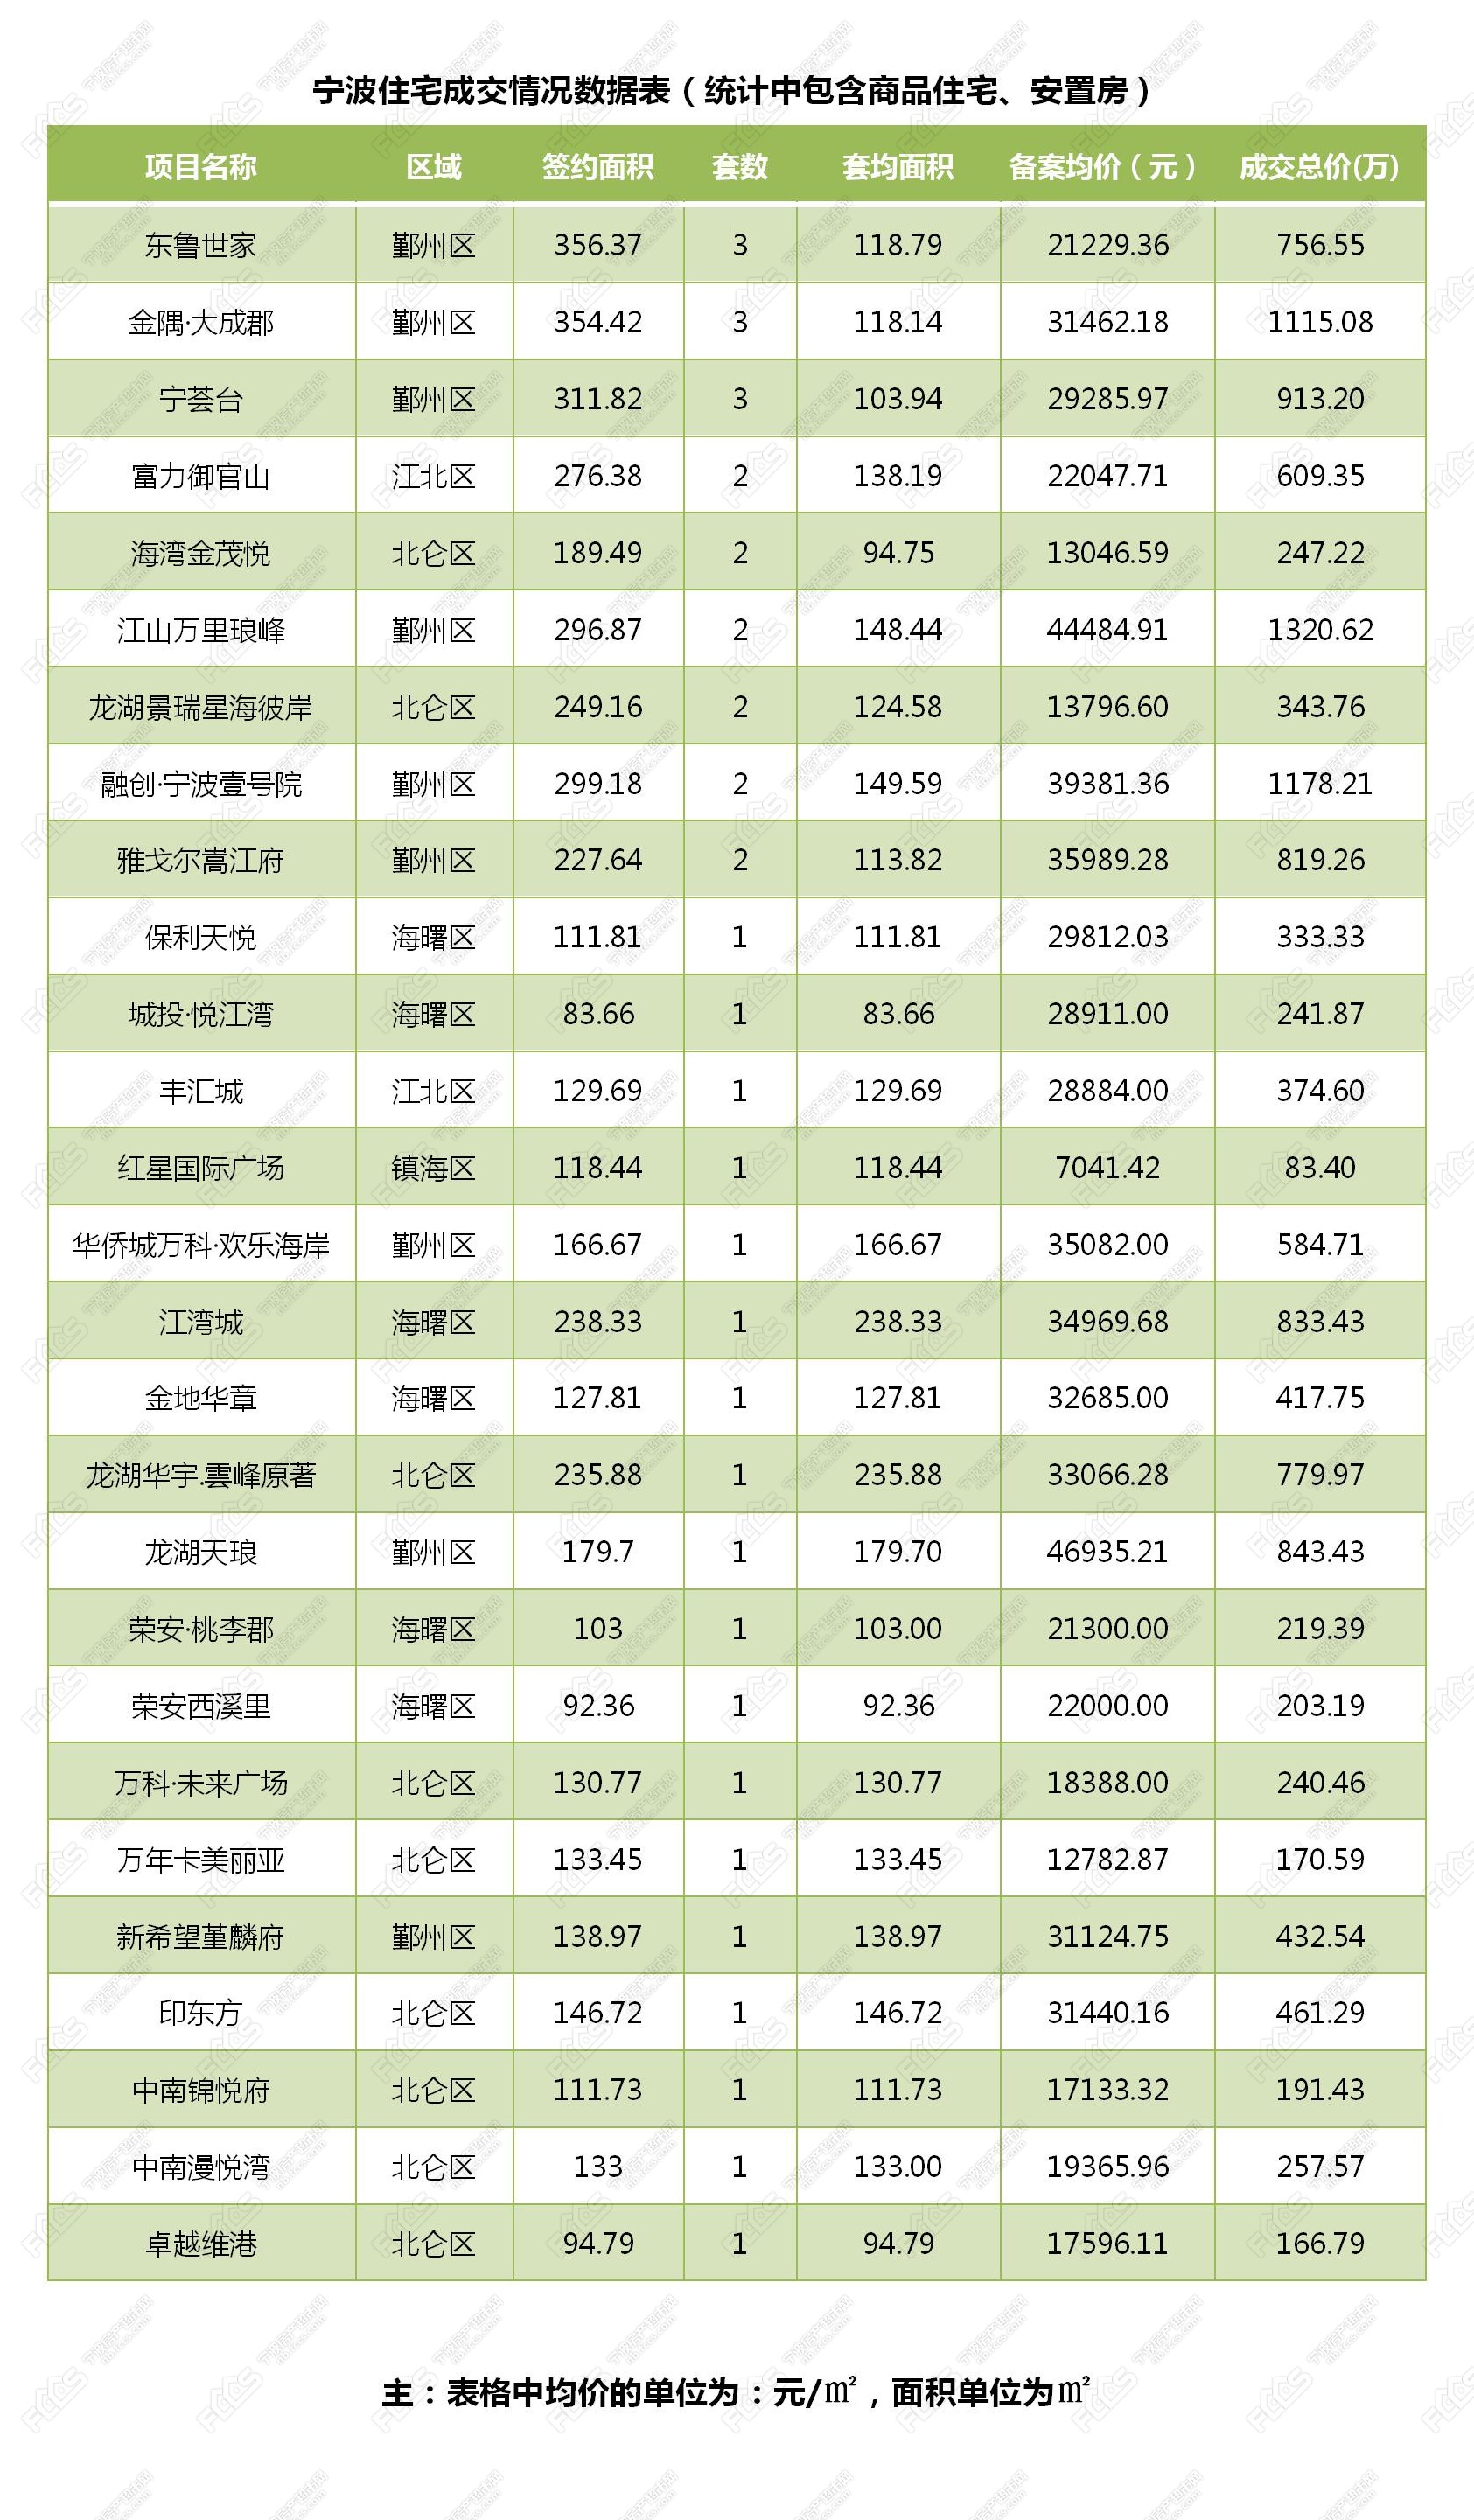 宁波三套房首付比例_二套房首付比例2015宁波_北京首套房首付比例2015